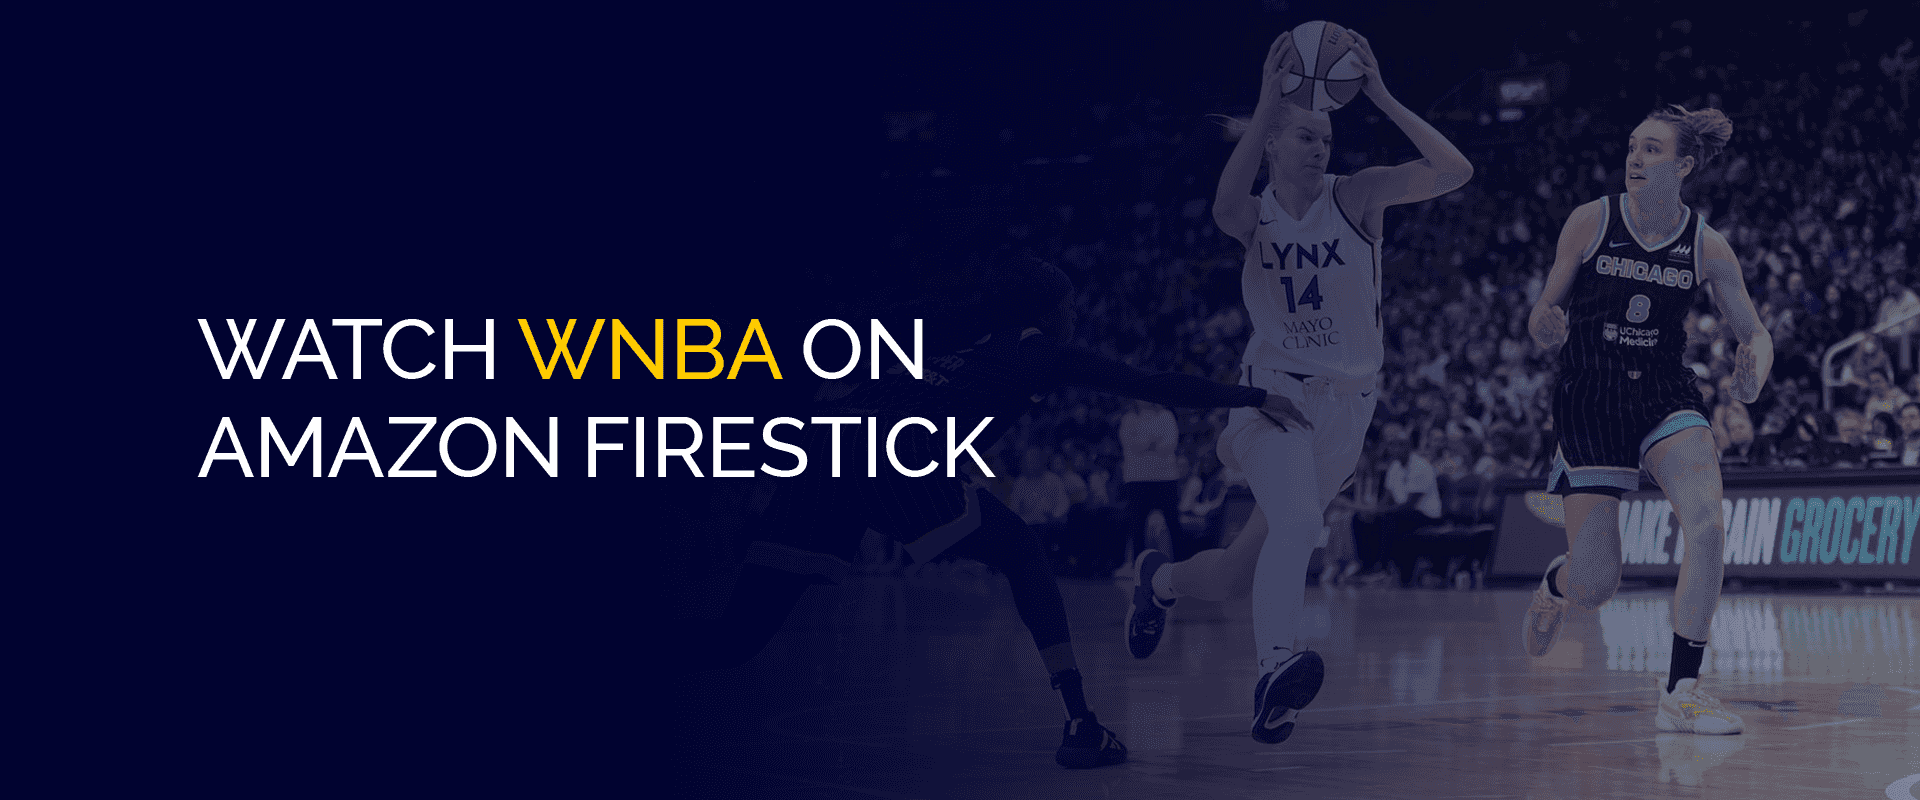 Kuckt WNBA op Amazon Firestick